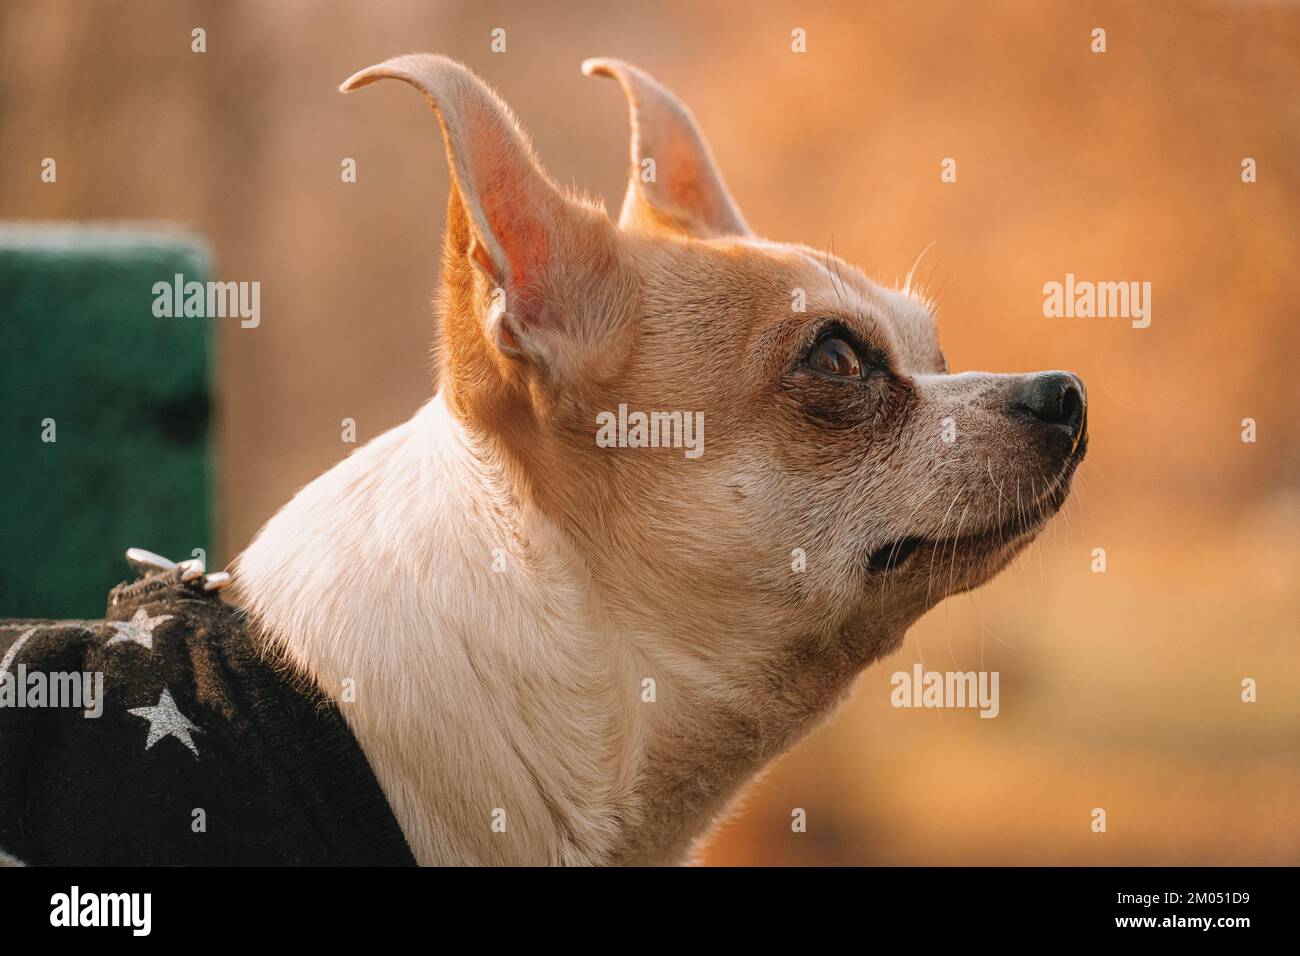 Ritratto di un piccolo cane che guarda il suo umano. Colori autunnali e uno sfondo di verde. Chihuahua in abiti da cane. Foto Stock